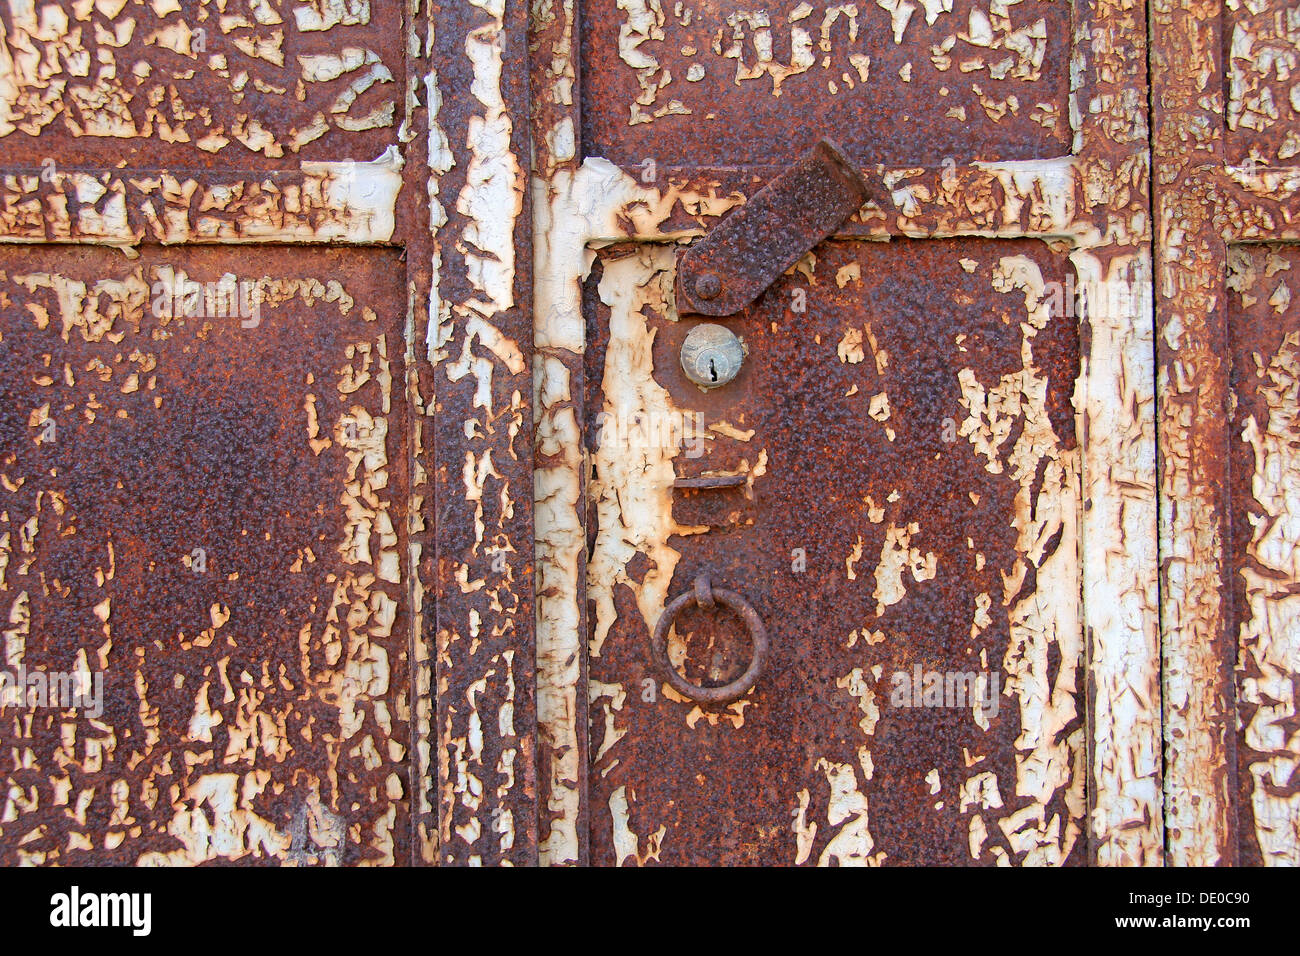 El hierro viejo, oxidado con puertas blancas hervidas Foto de stock